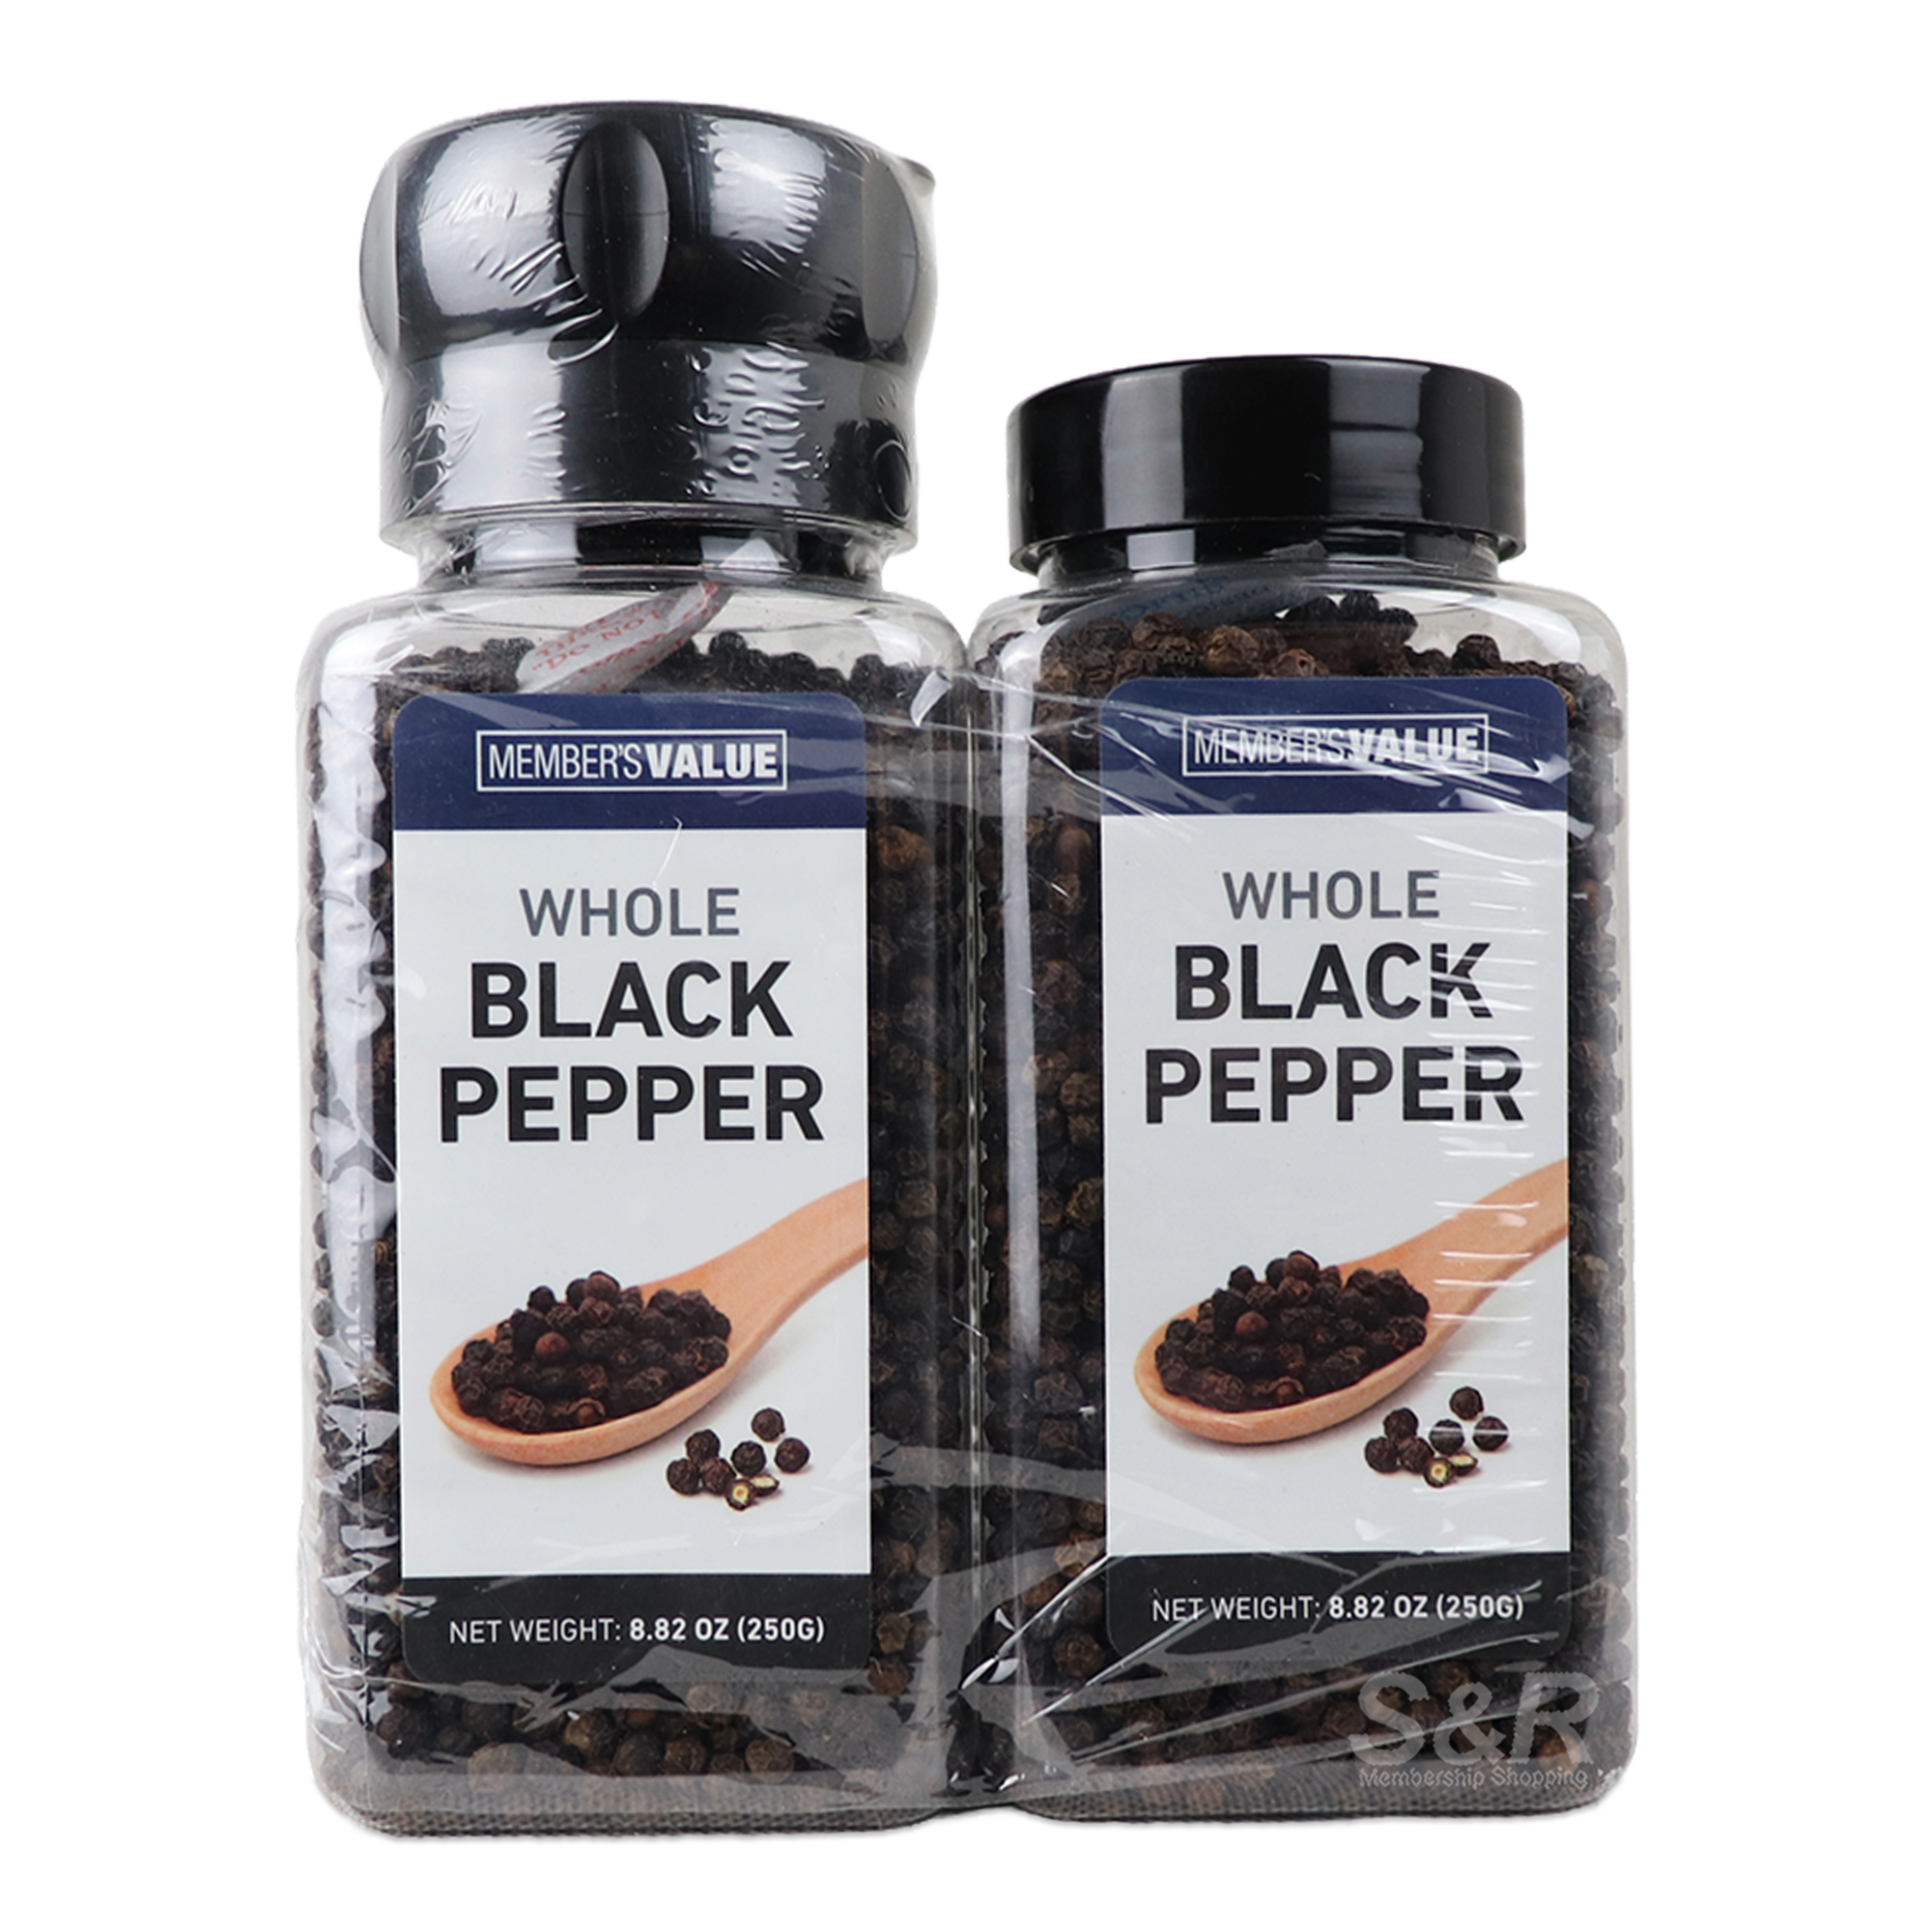 Member's Value Whole Black Pepper 2pcs x 250g